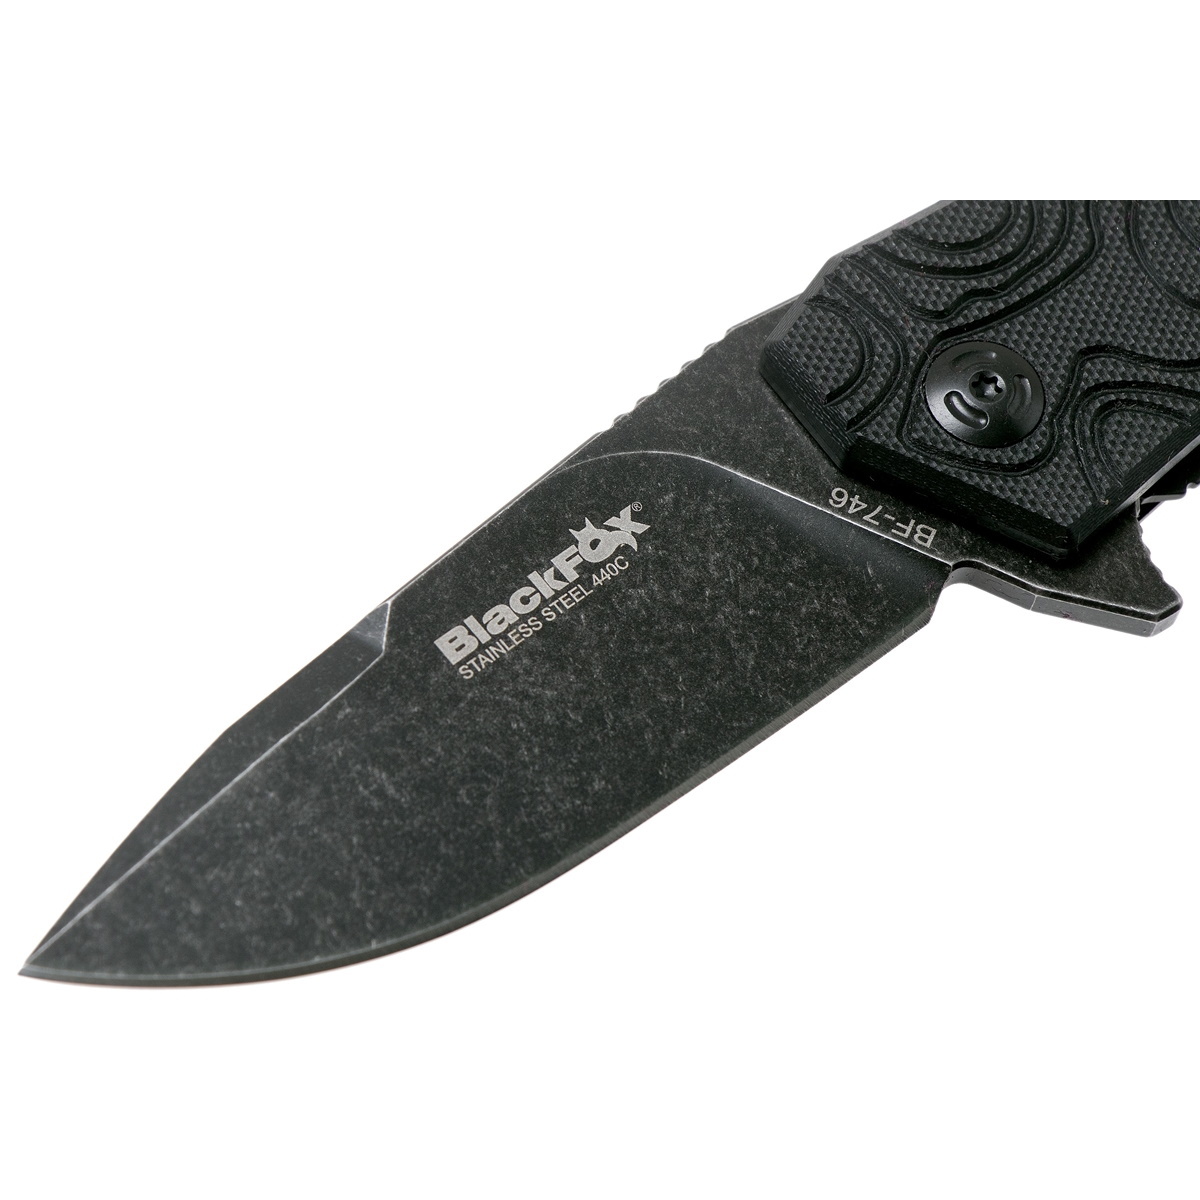 Складной нож Fox Echo 1, сталь 440C, рукоять G-10 черный - фото 4